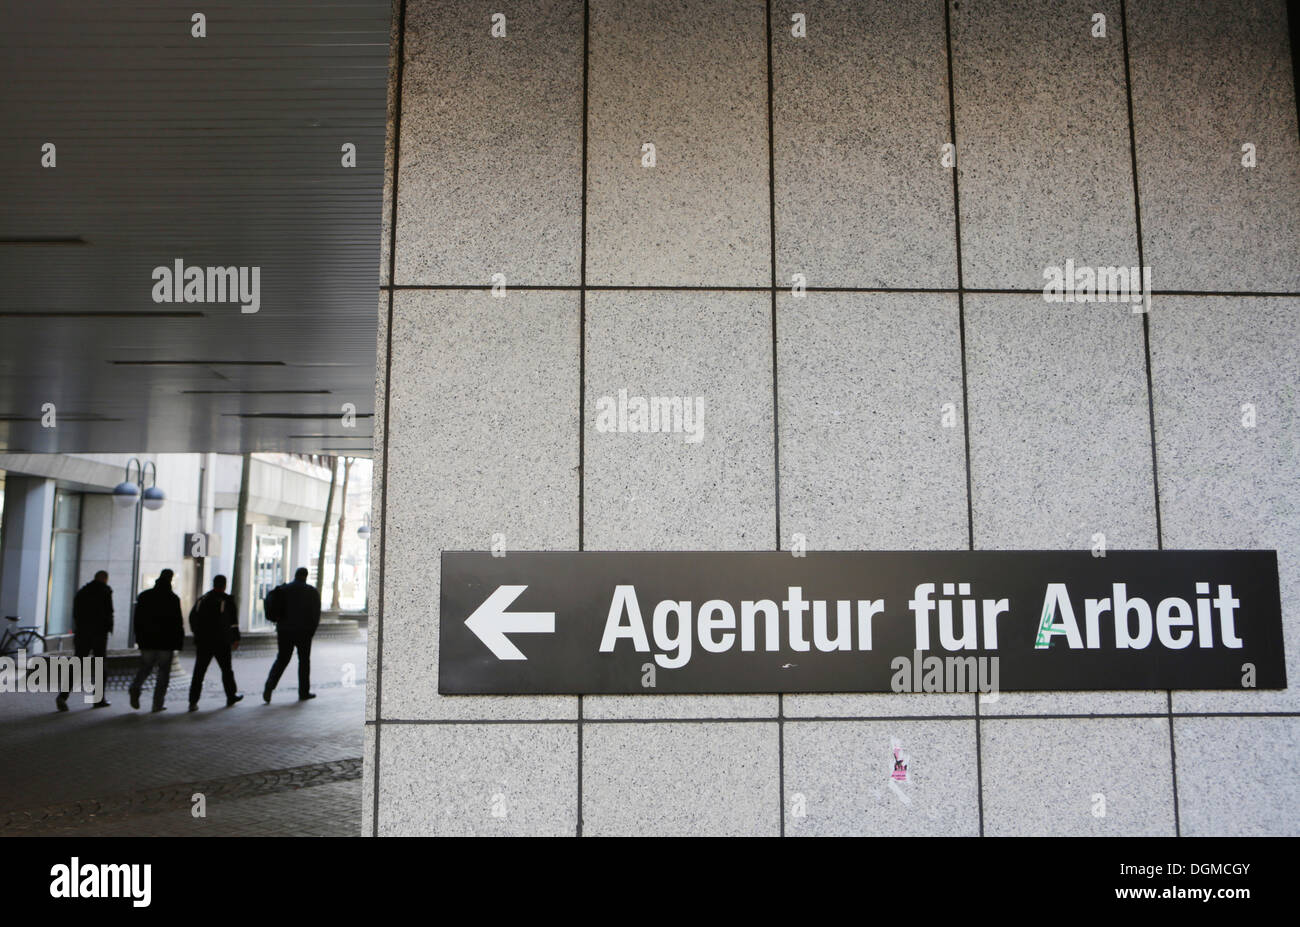 Signer, 'Agentur fuer Arbeit', l'allemand pour l'emploi, de l'Agence, Cologne, Rhénanie-du-Nord - Westphalie, Allemagne Banque D'Images